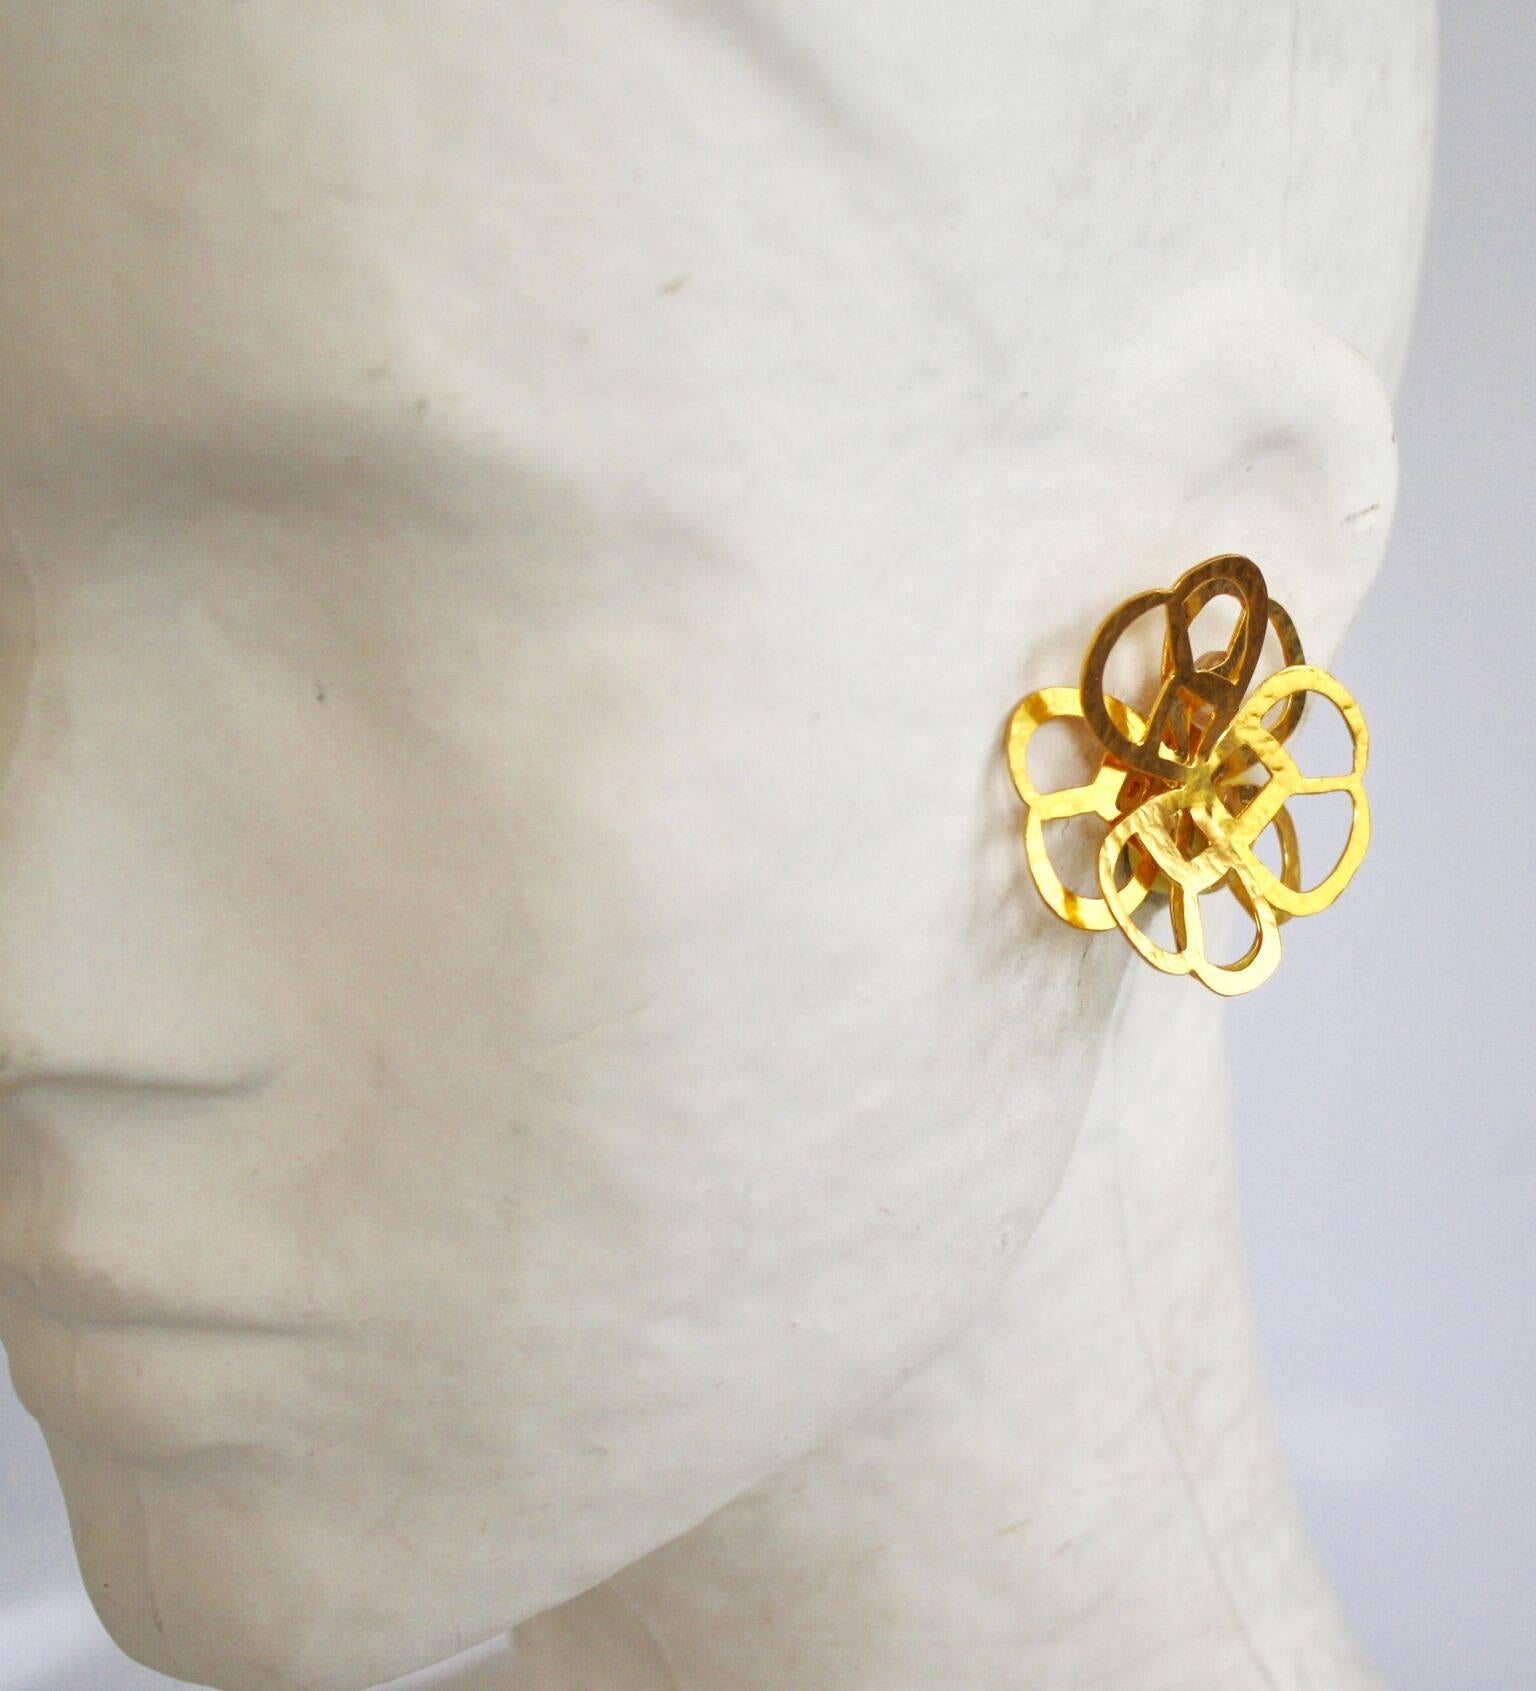 Gilded brass flower clip earrings from Herve van der Straeten. 

1.5